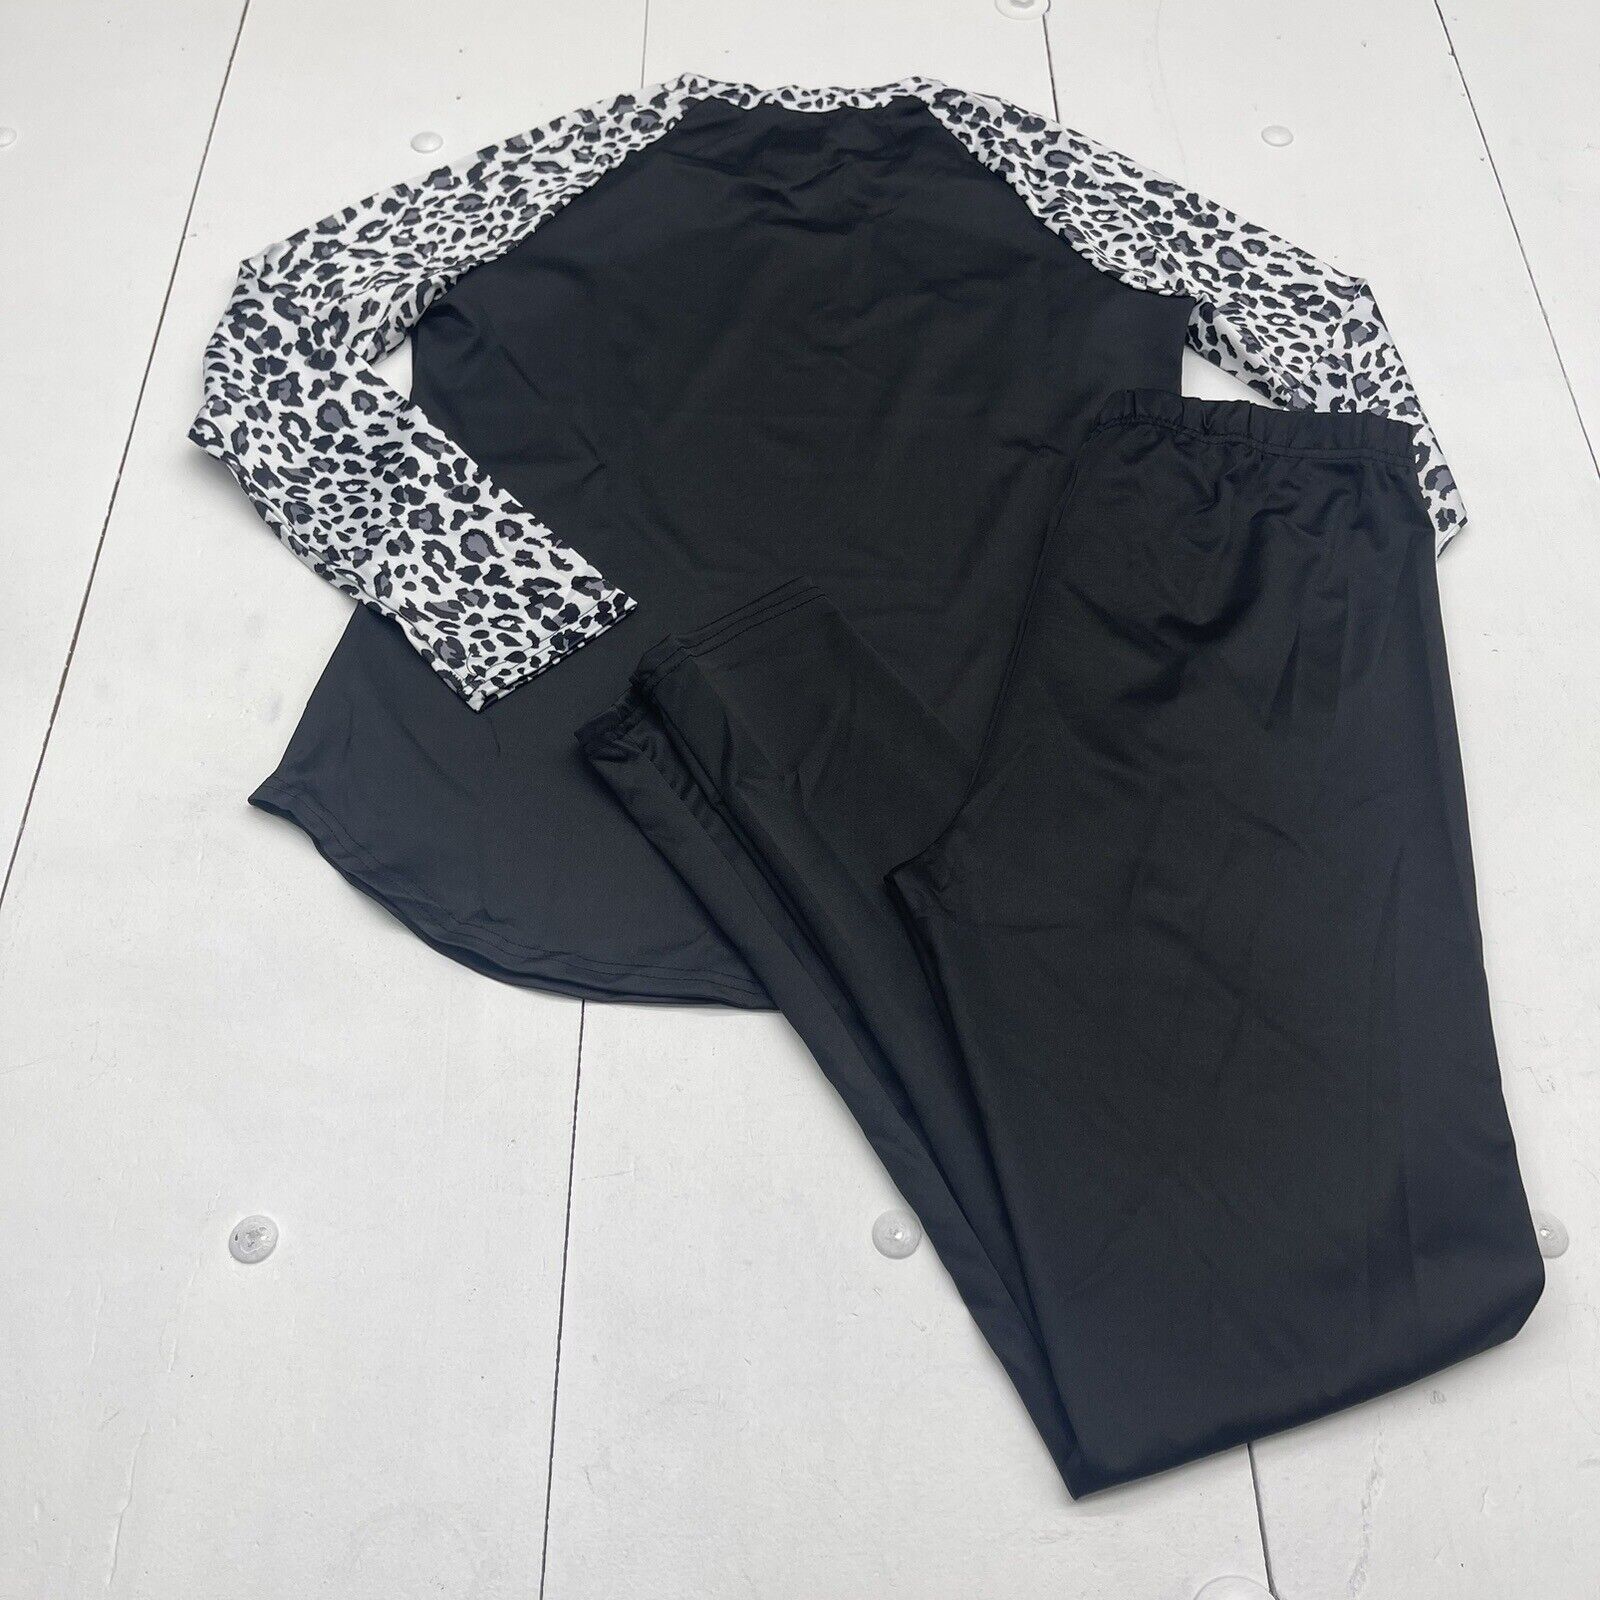 Black Leopard Animal Printed Wide Leg Pants Women's Size XL/XXL